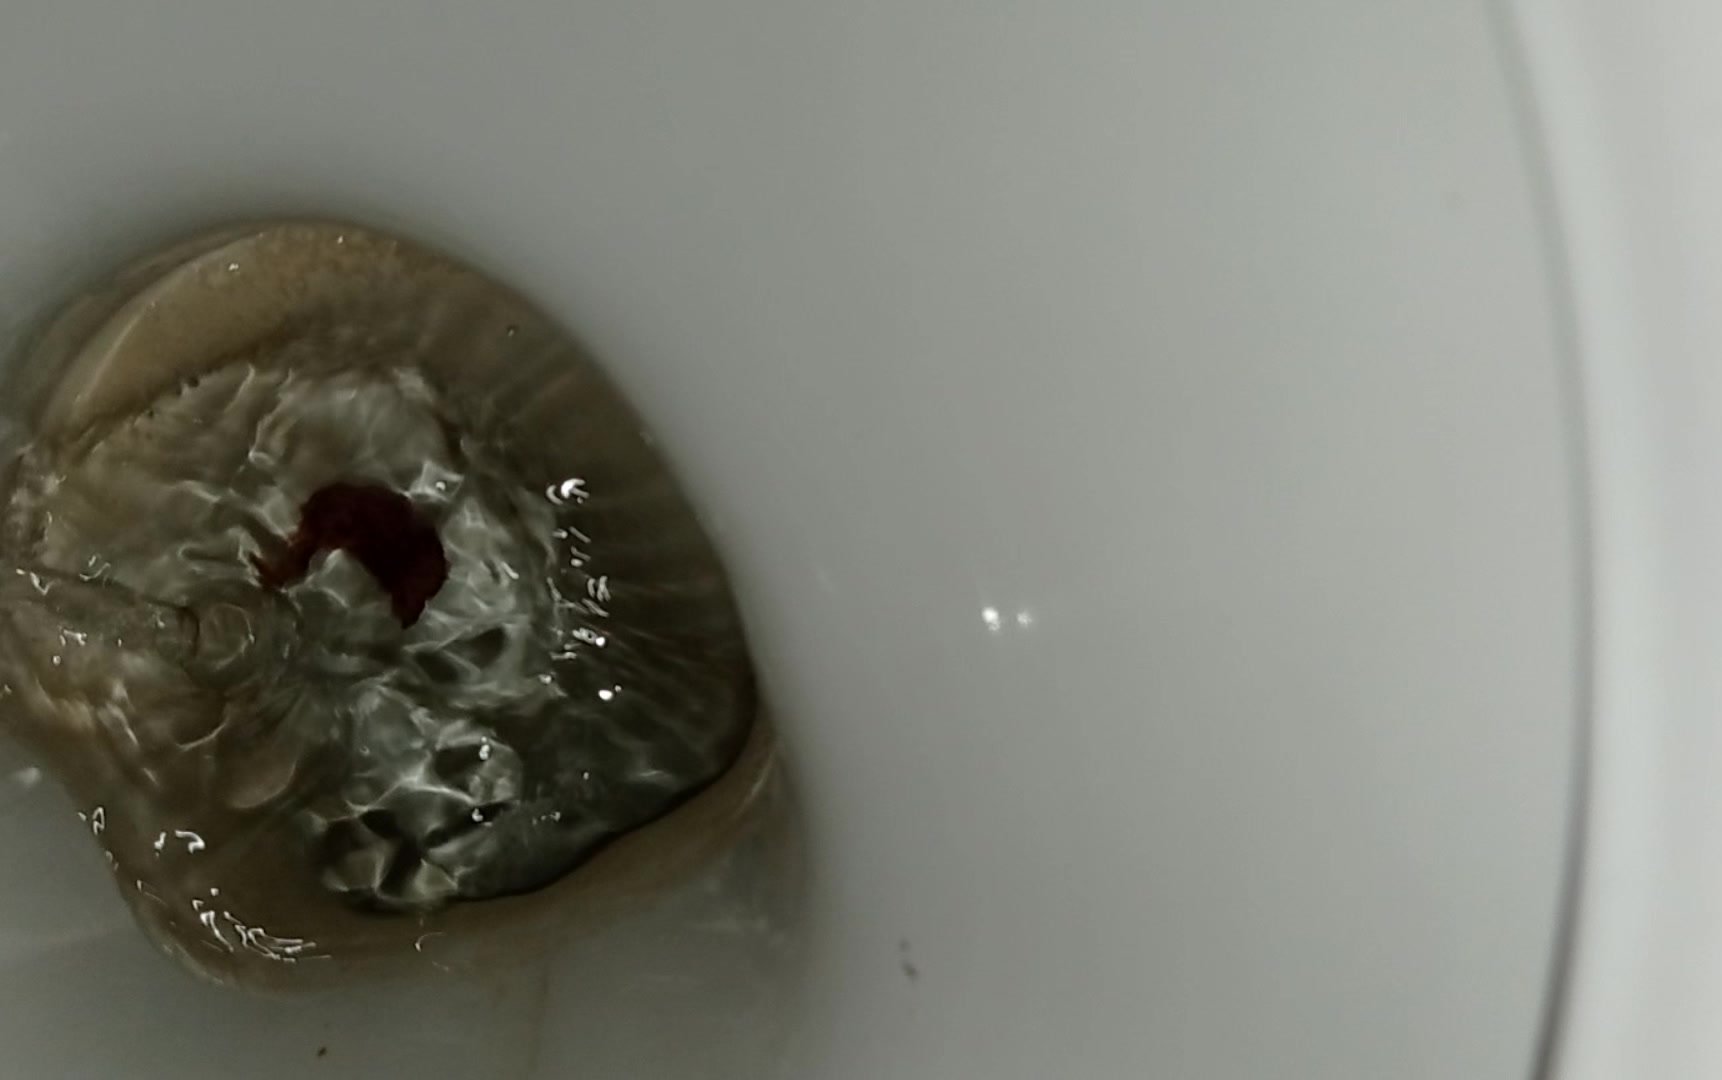 Poop in public toilet - video 2